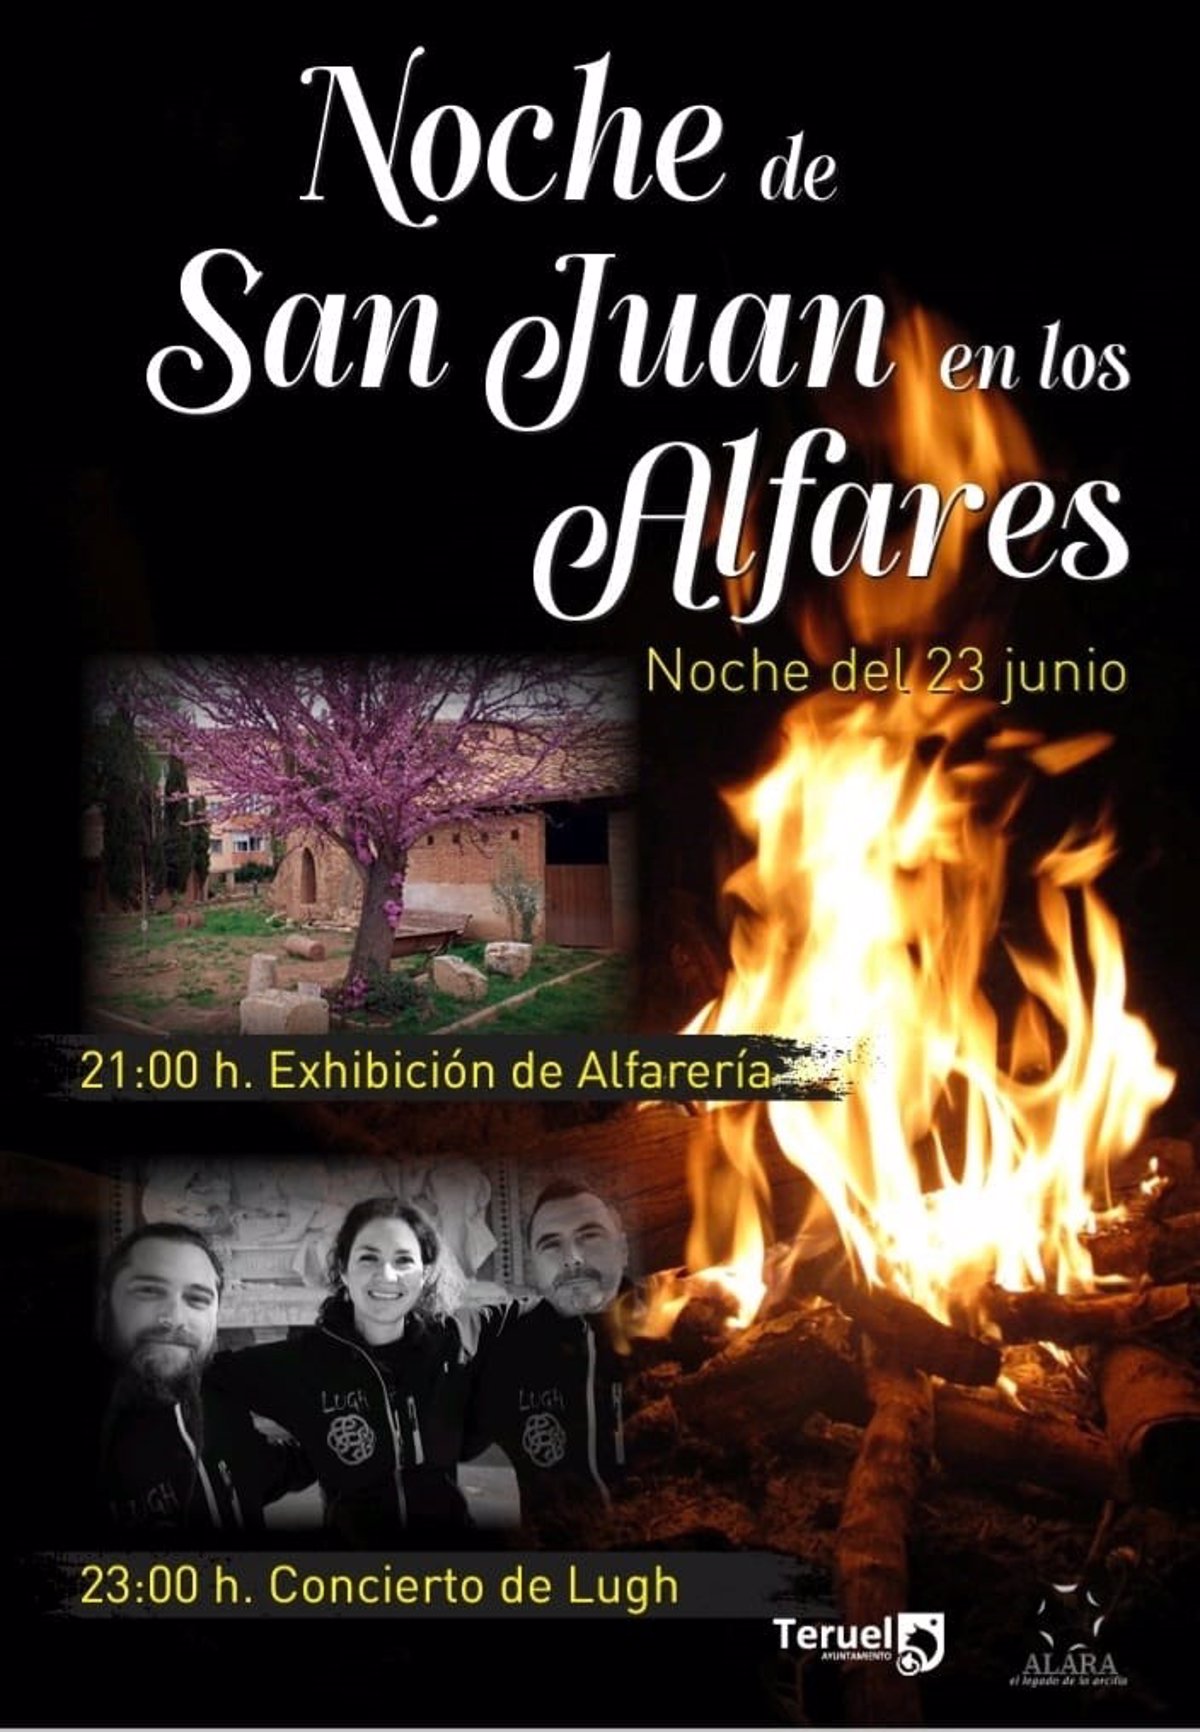 Teruel celebra la Noche de San Juan con cerámica y un concierto en los Alfares